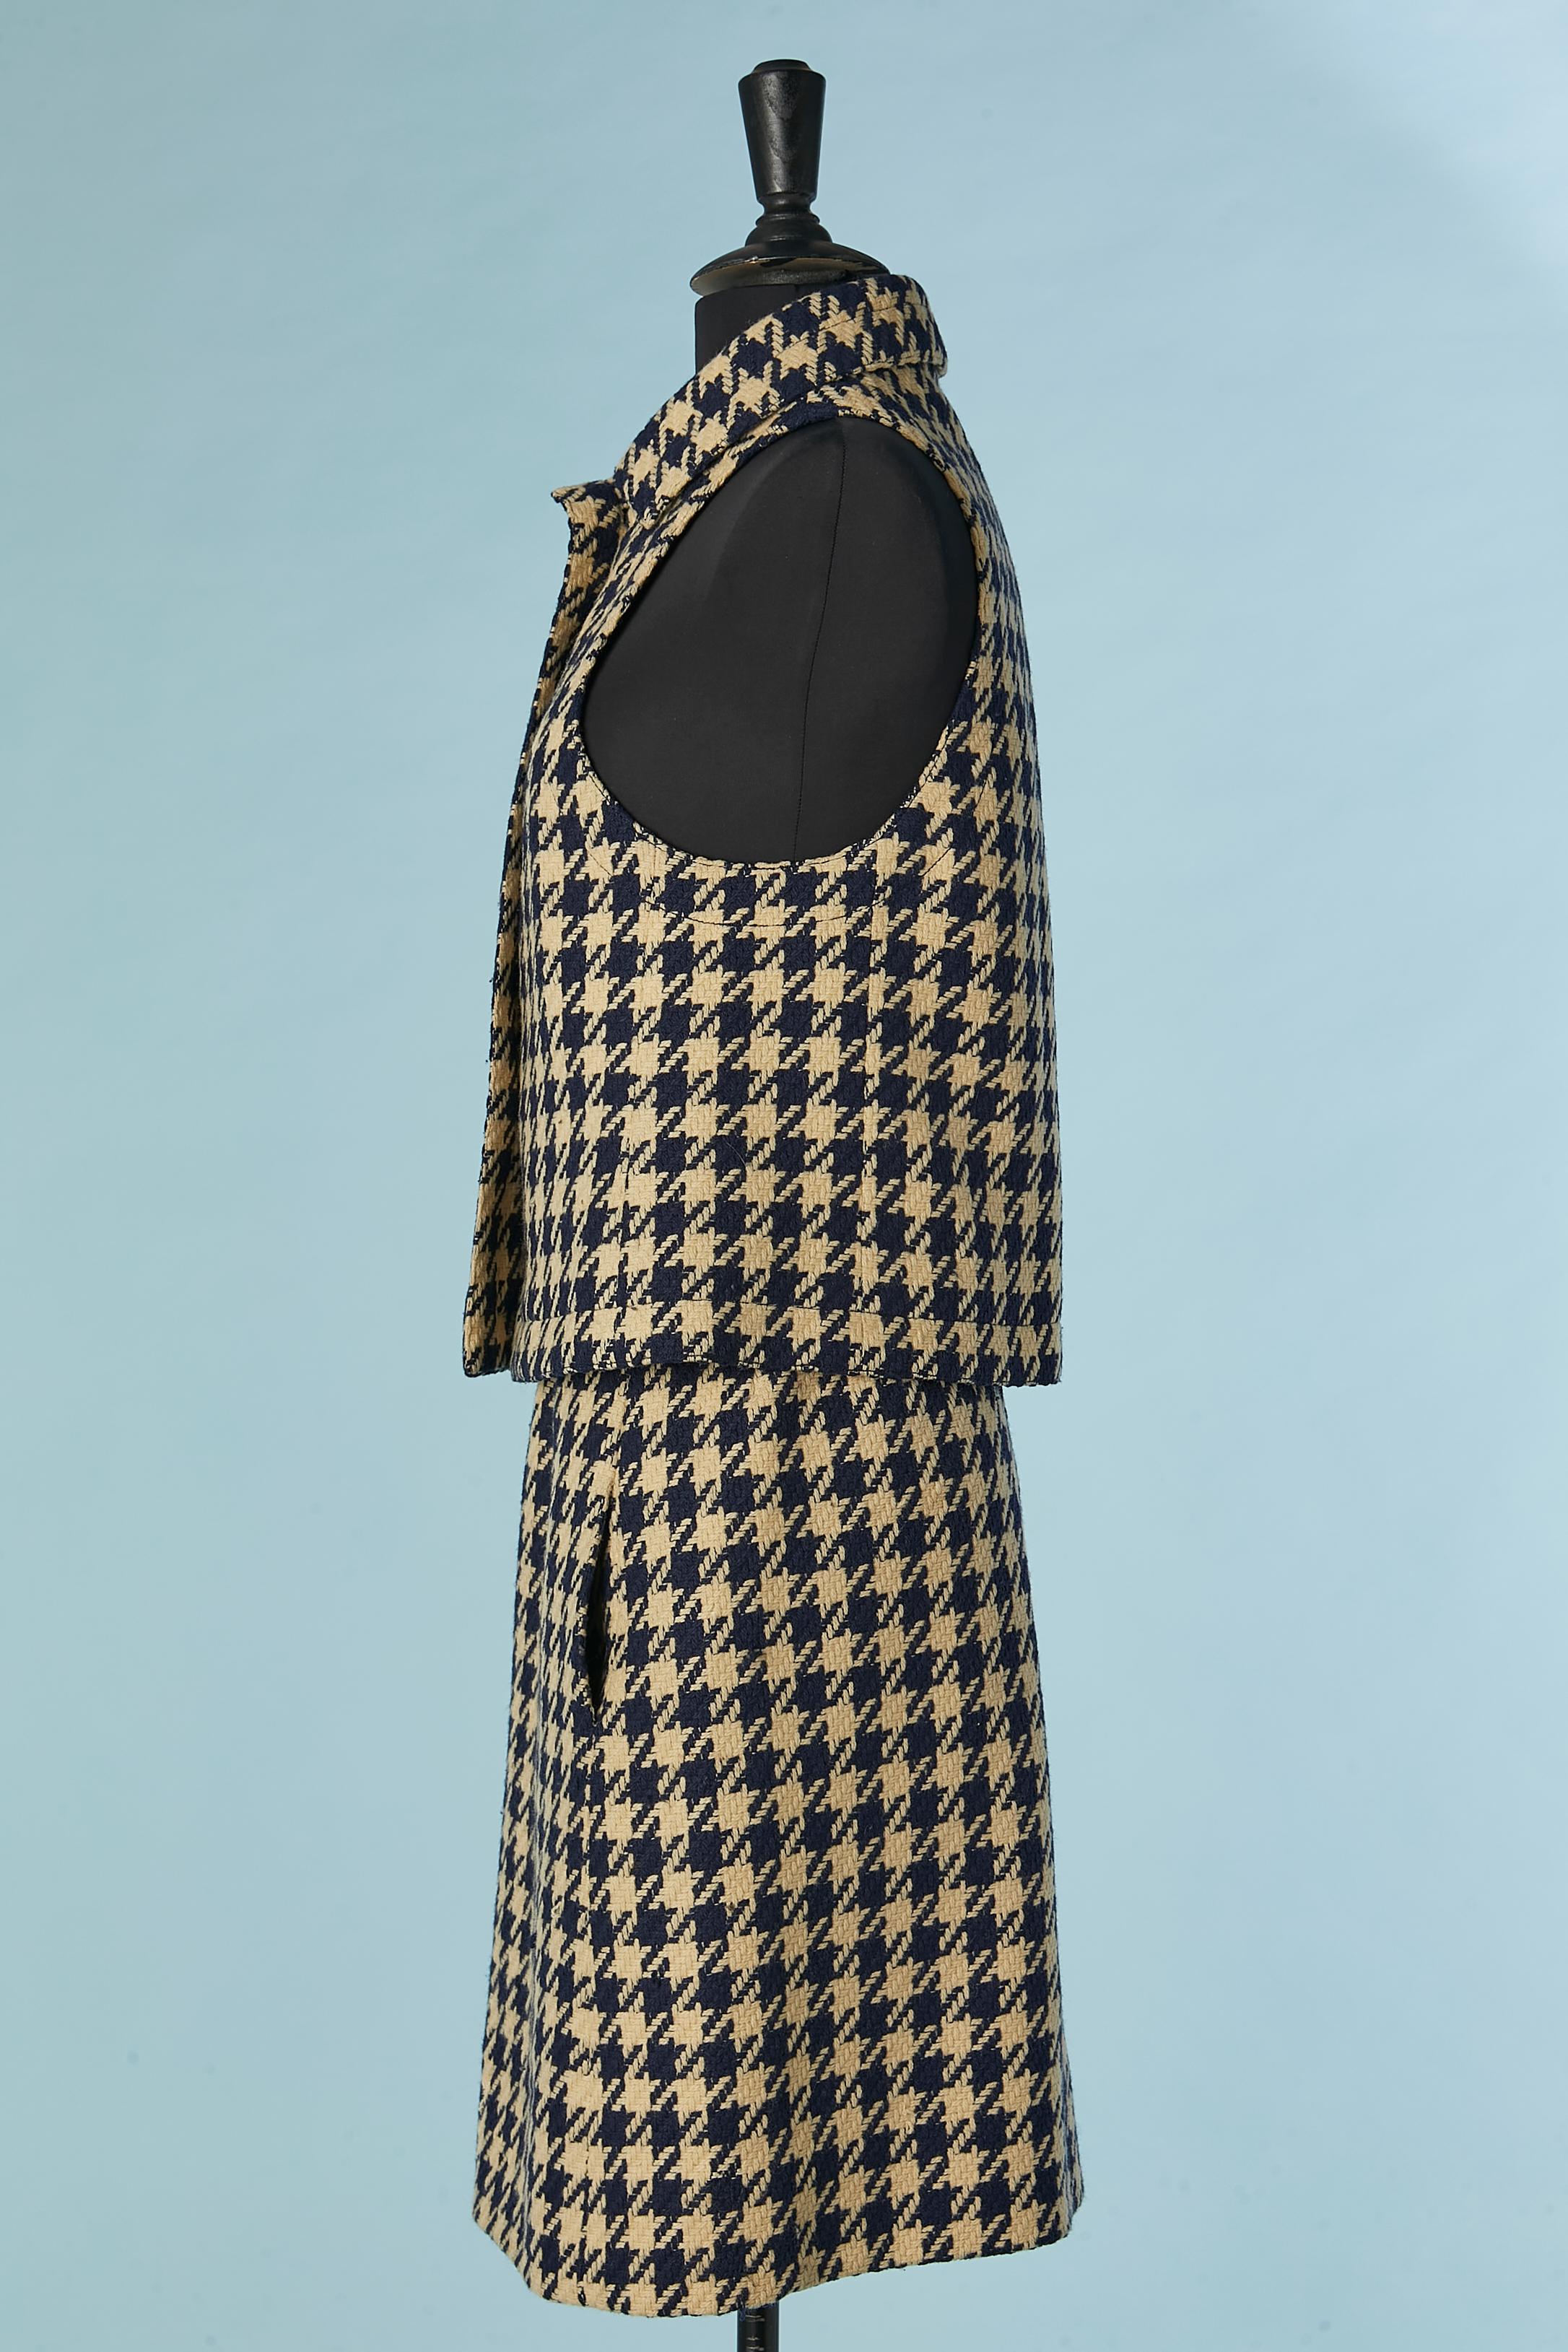 Off-white and navy blue Pied de coq skirt-suit La Boutique de Jeanne Lanvin  For Sale 1